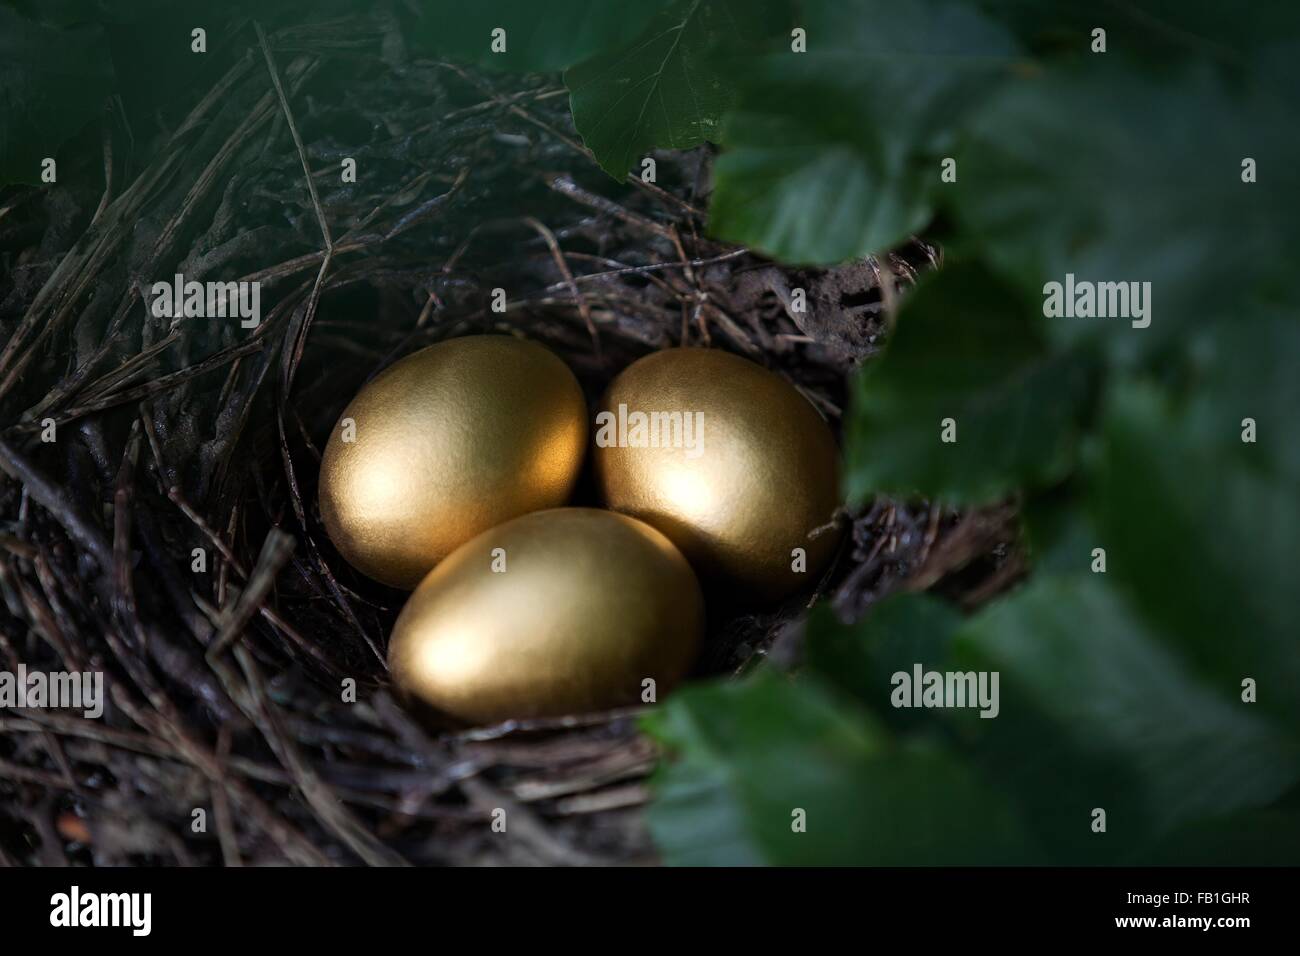 Nahaufnahme von drei goldenen Eiern im Vogelnest Stockfoto